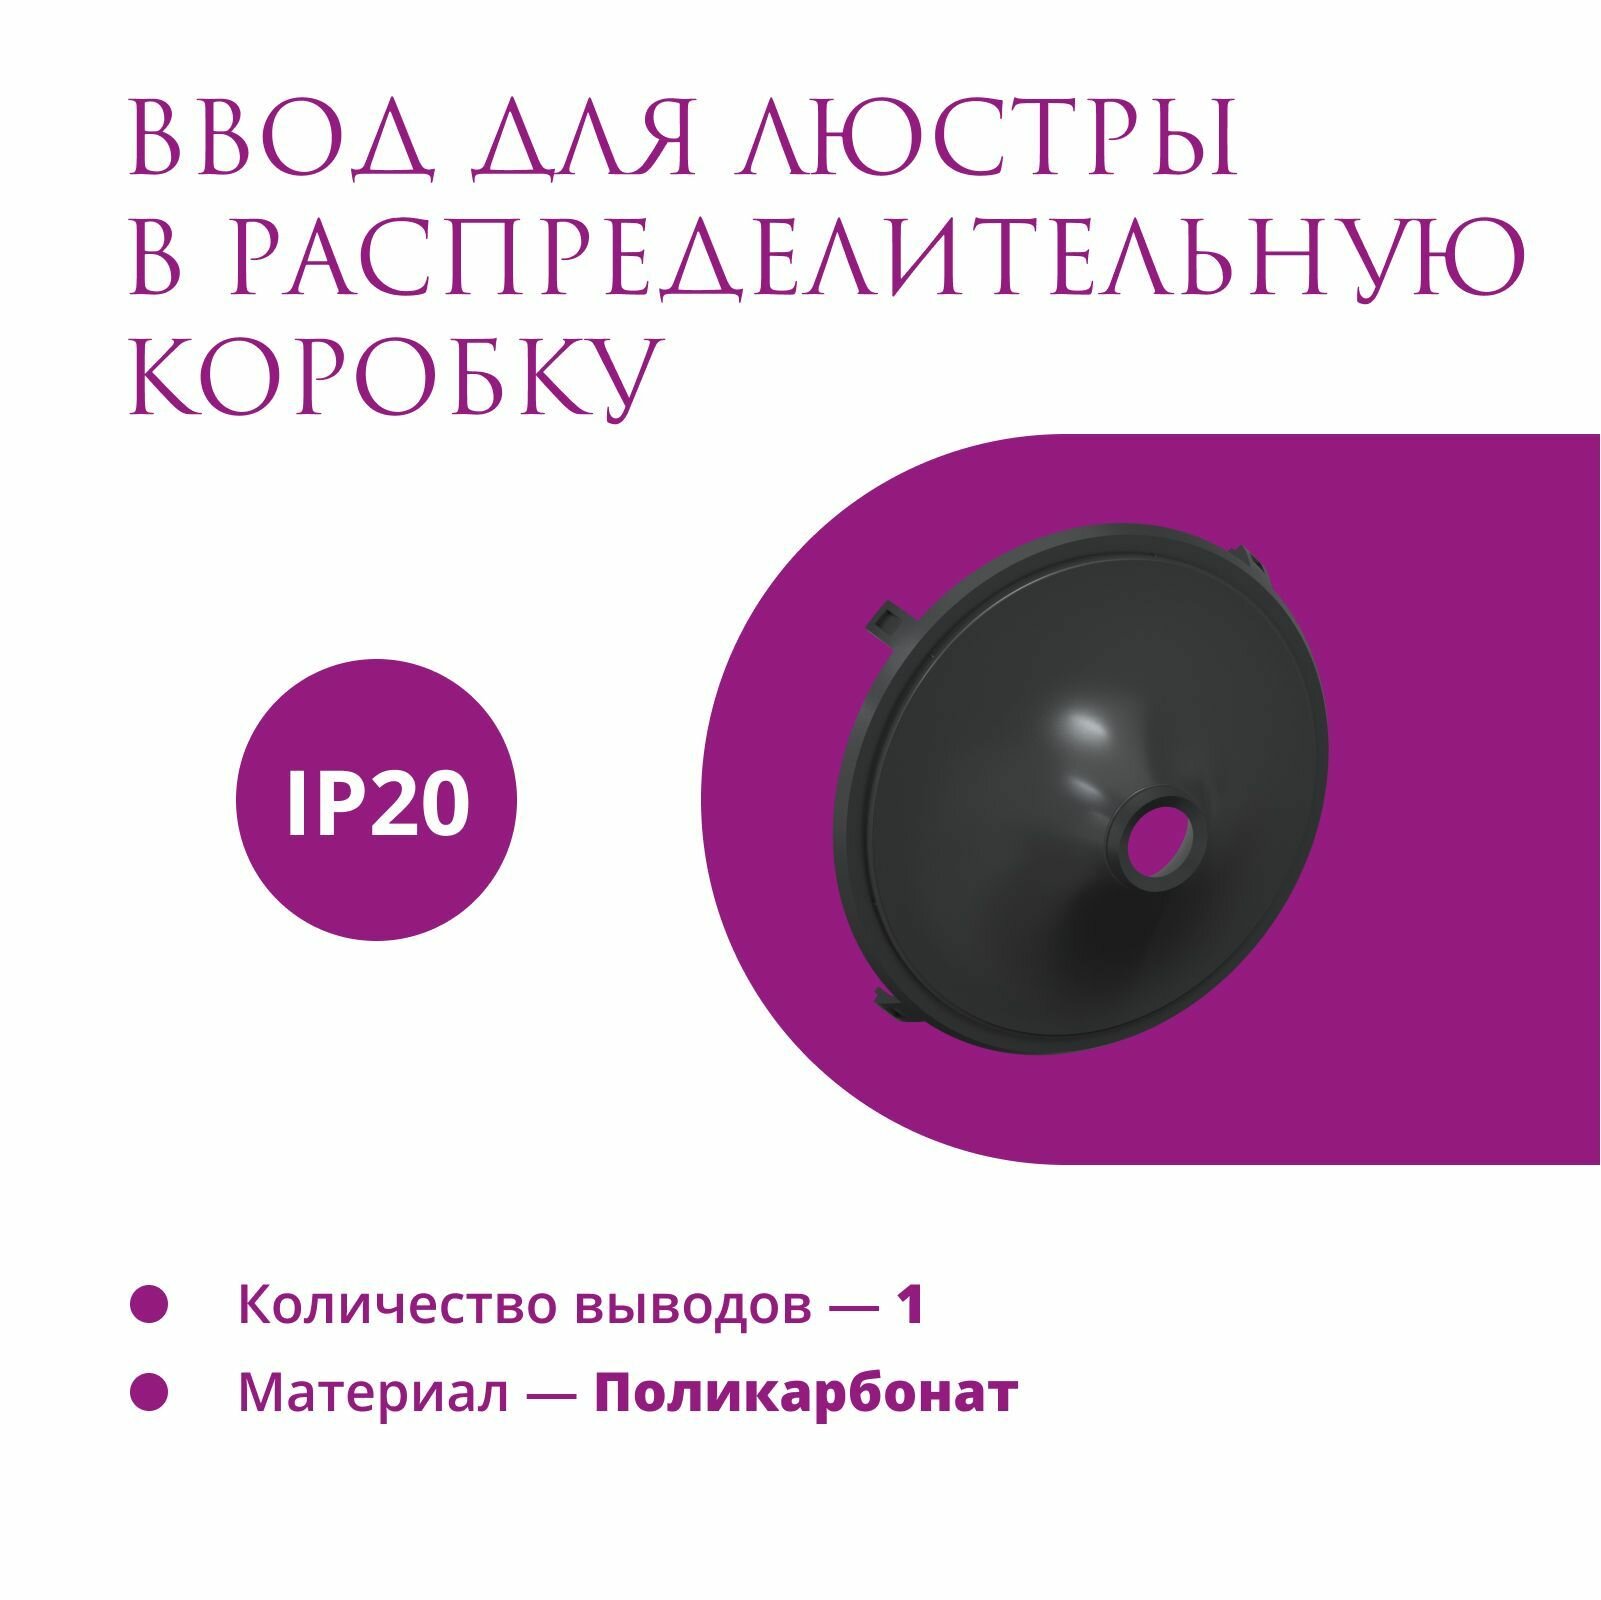 Ввод в распределительную коробку Rotondo (OneKeyElectro) для светильника, цвет черный.